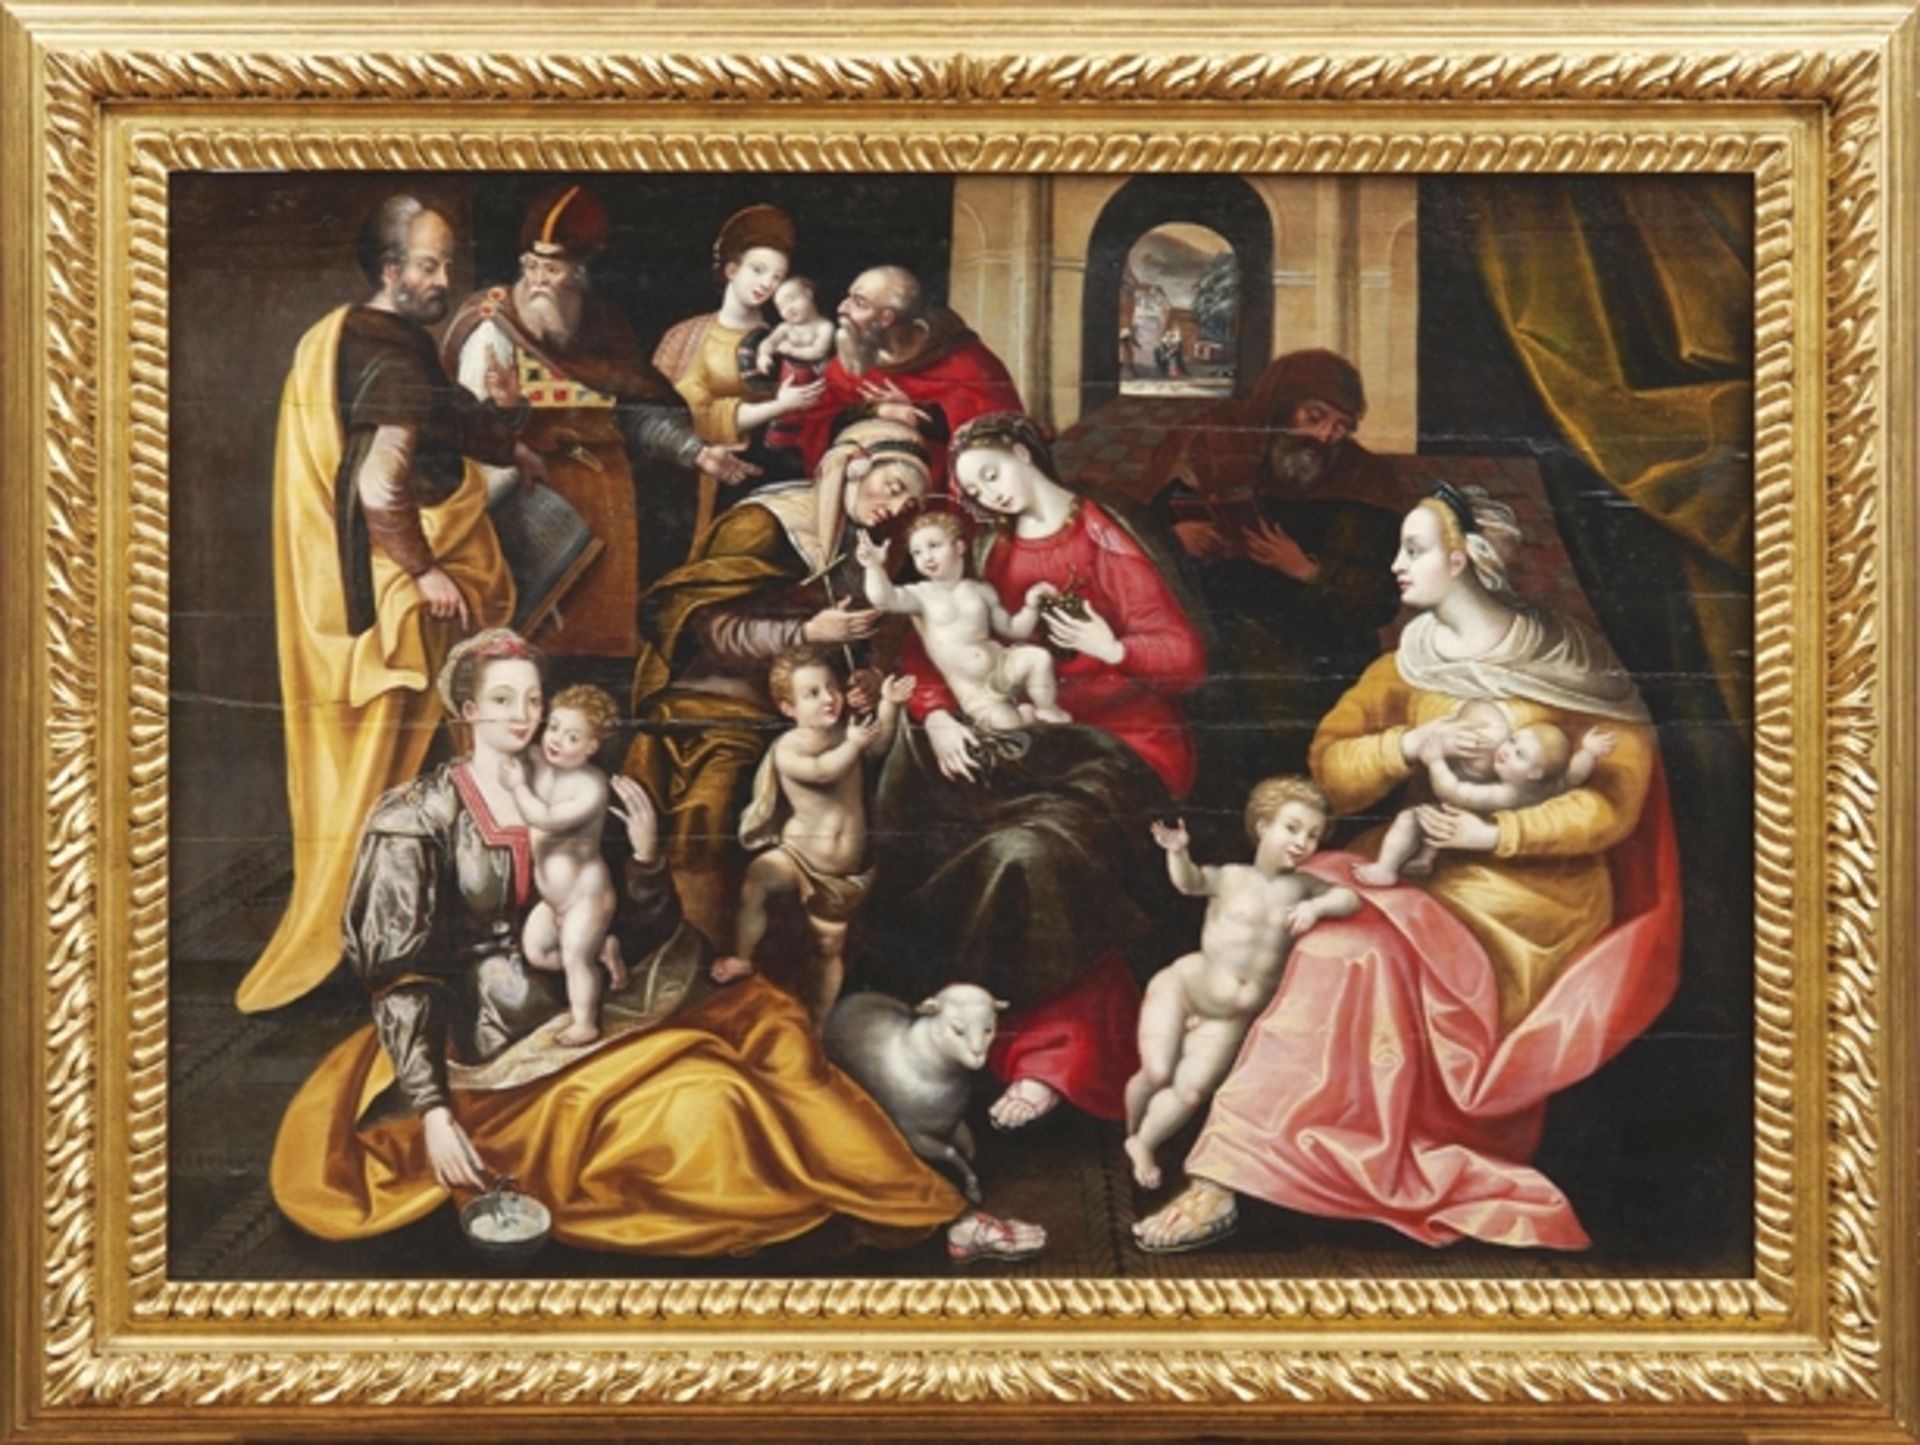 Vos, Marten de - UmkreisDie Heilige Sippe(Antwerpen 1532-1603 ebd.) Dargestellt ist die Familie